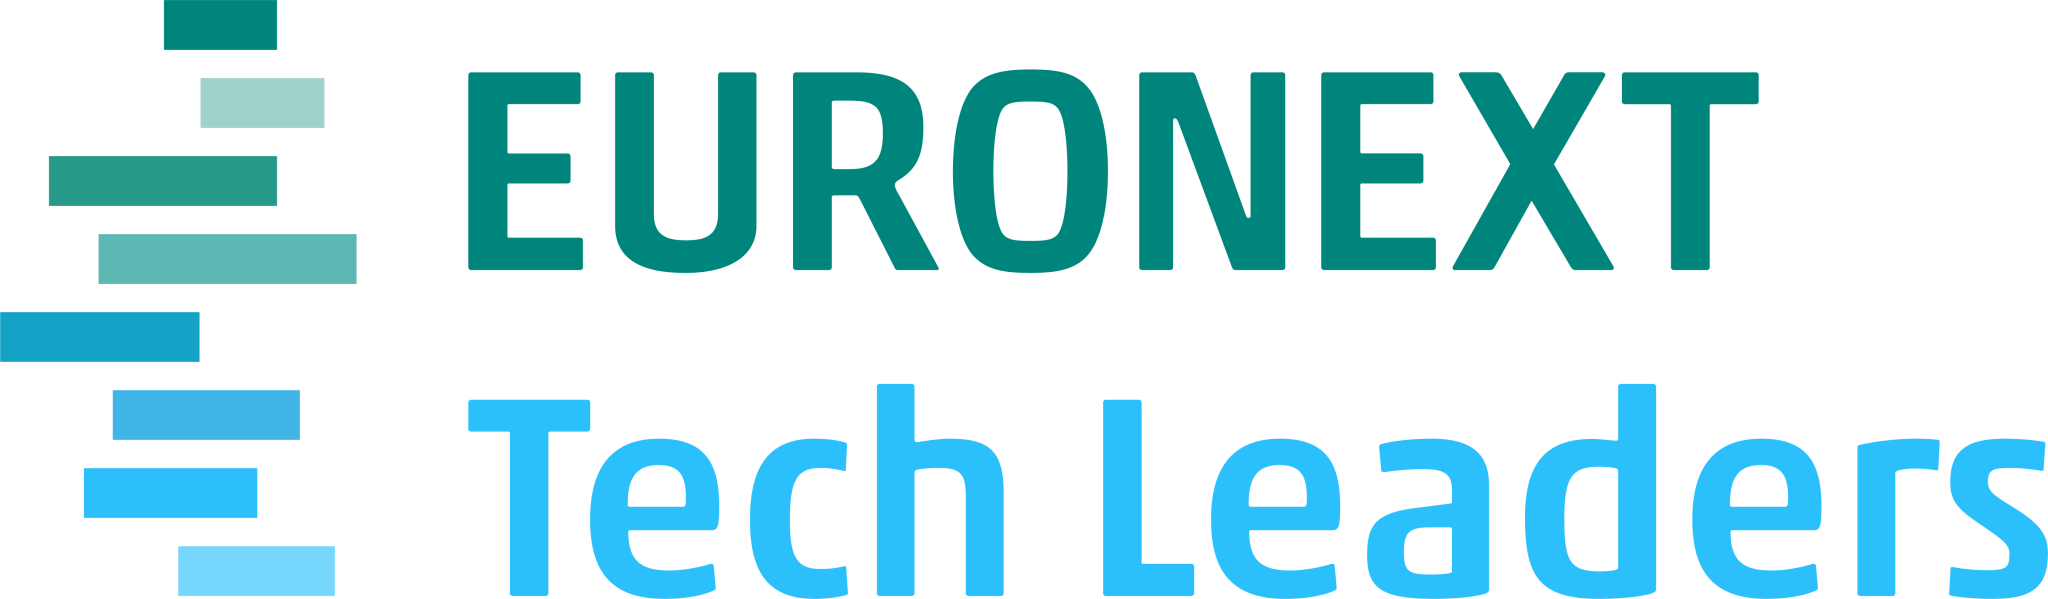 Euronext's logo